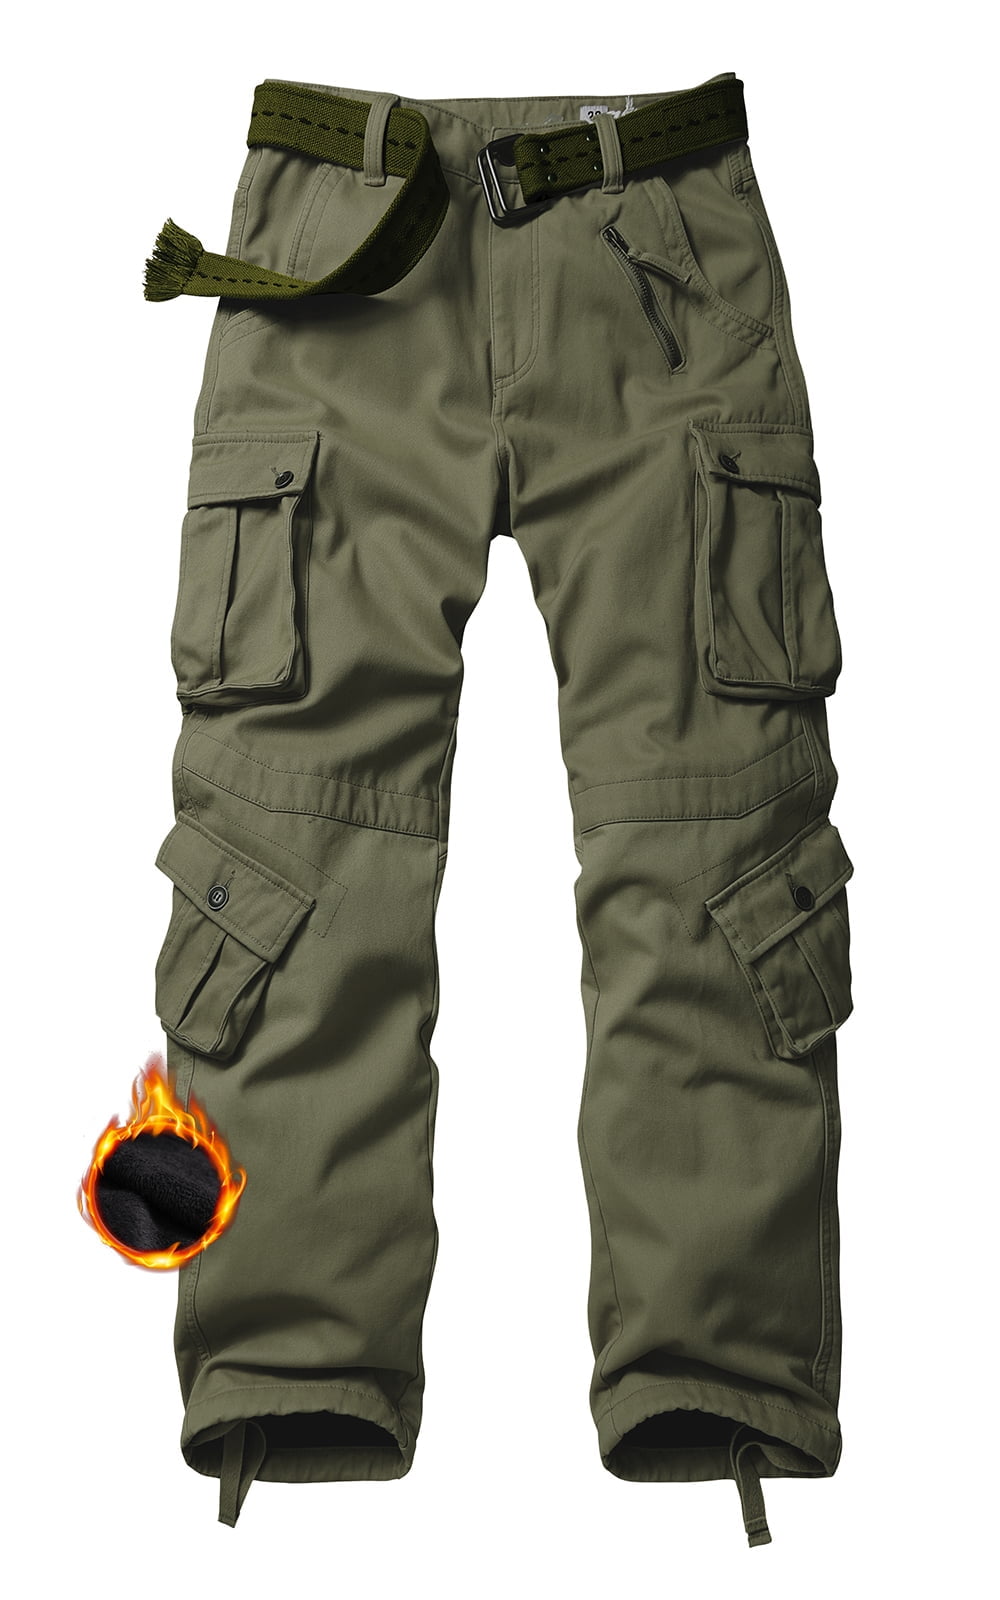 TRGPSG Men's Fleece Lined Hiking Pants Outdoor Cargo Pants Casual